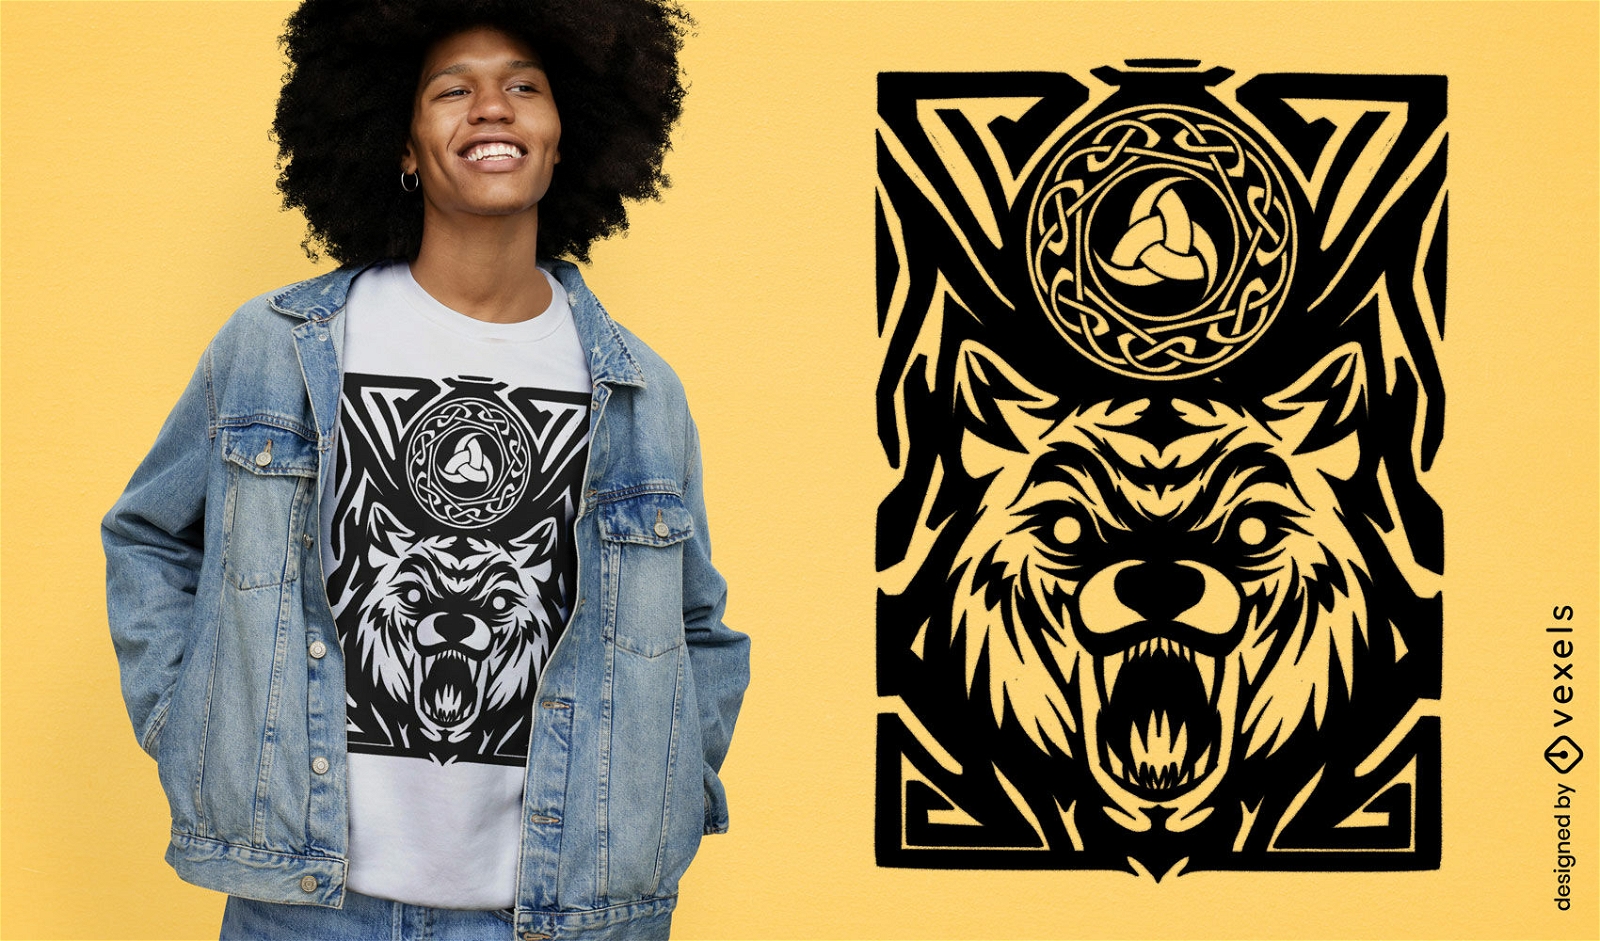 Diseño de camiseta con símbolo celta y animal lobo